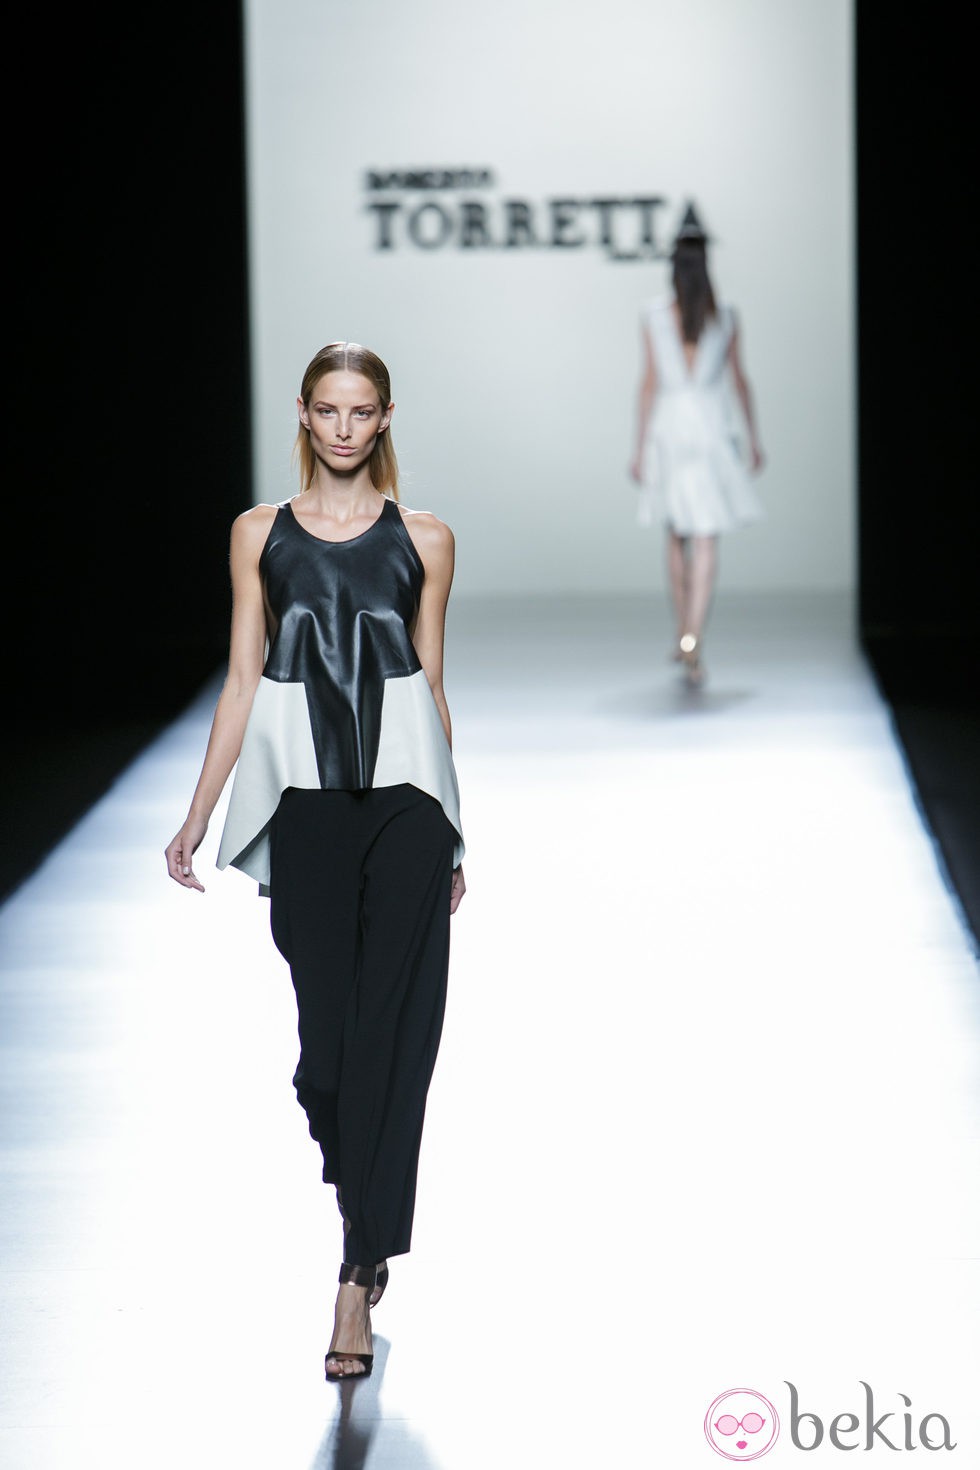 Conjunto black&white de Roberto Torretta en Madrid Fashion Week primavera/verano 2015